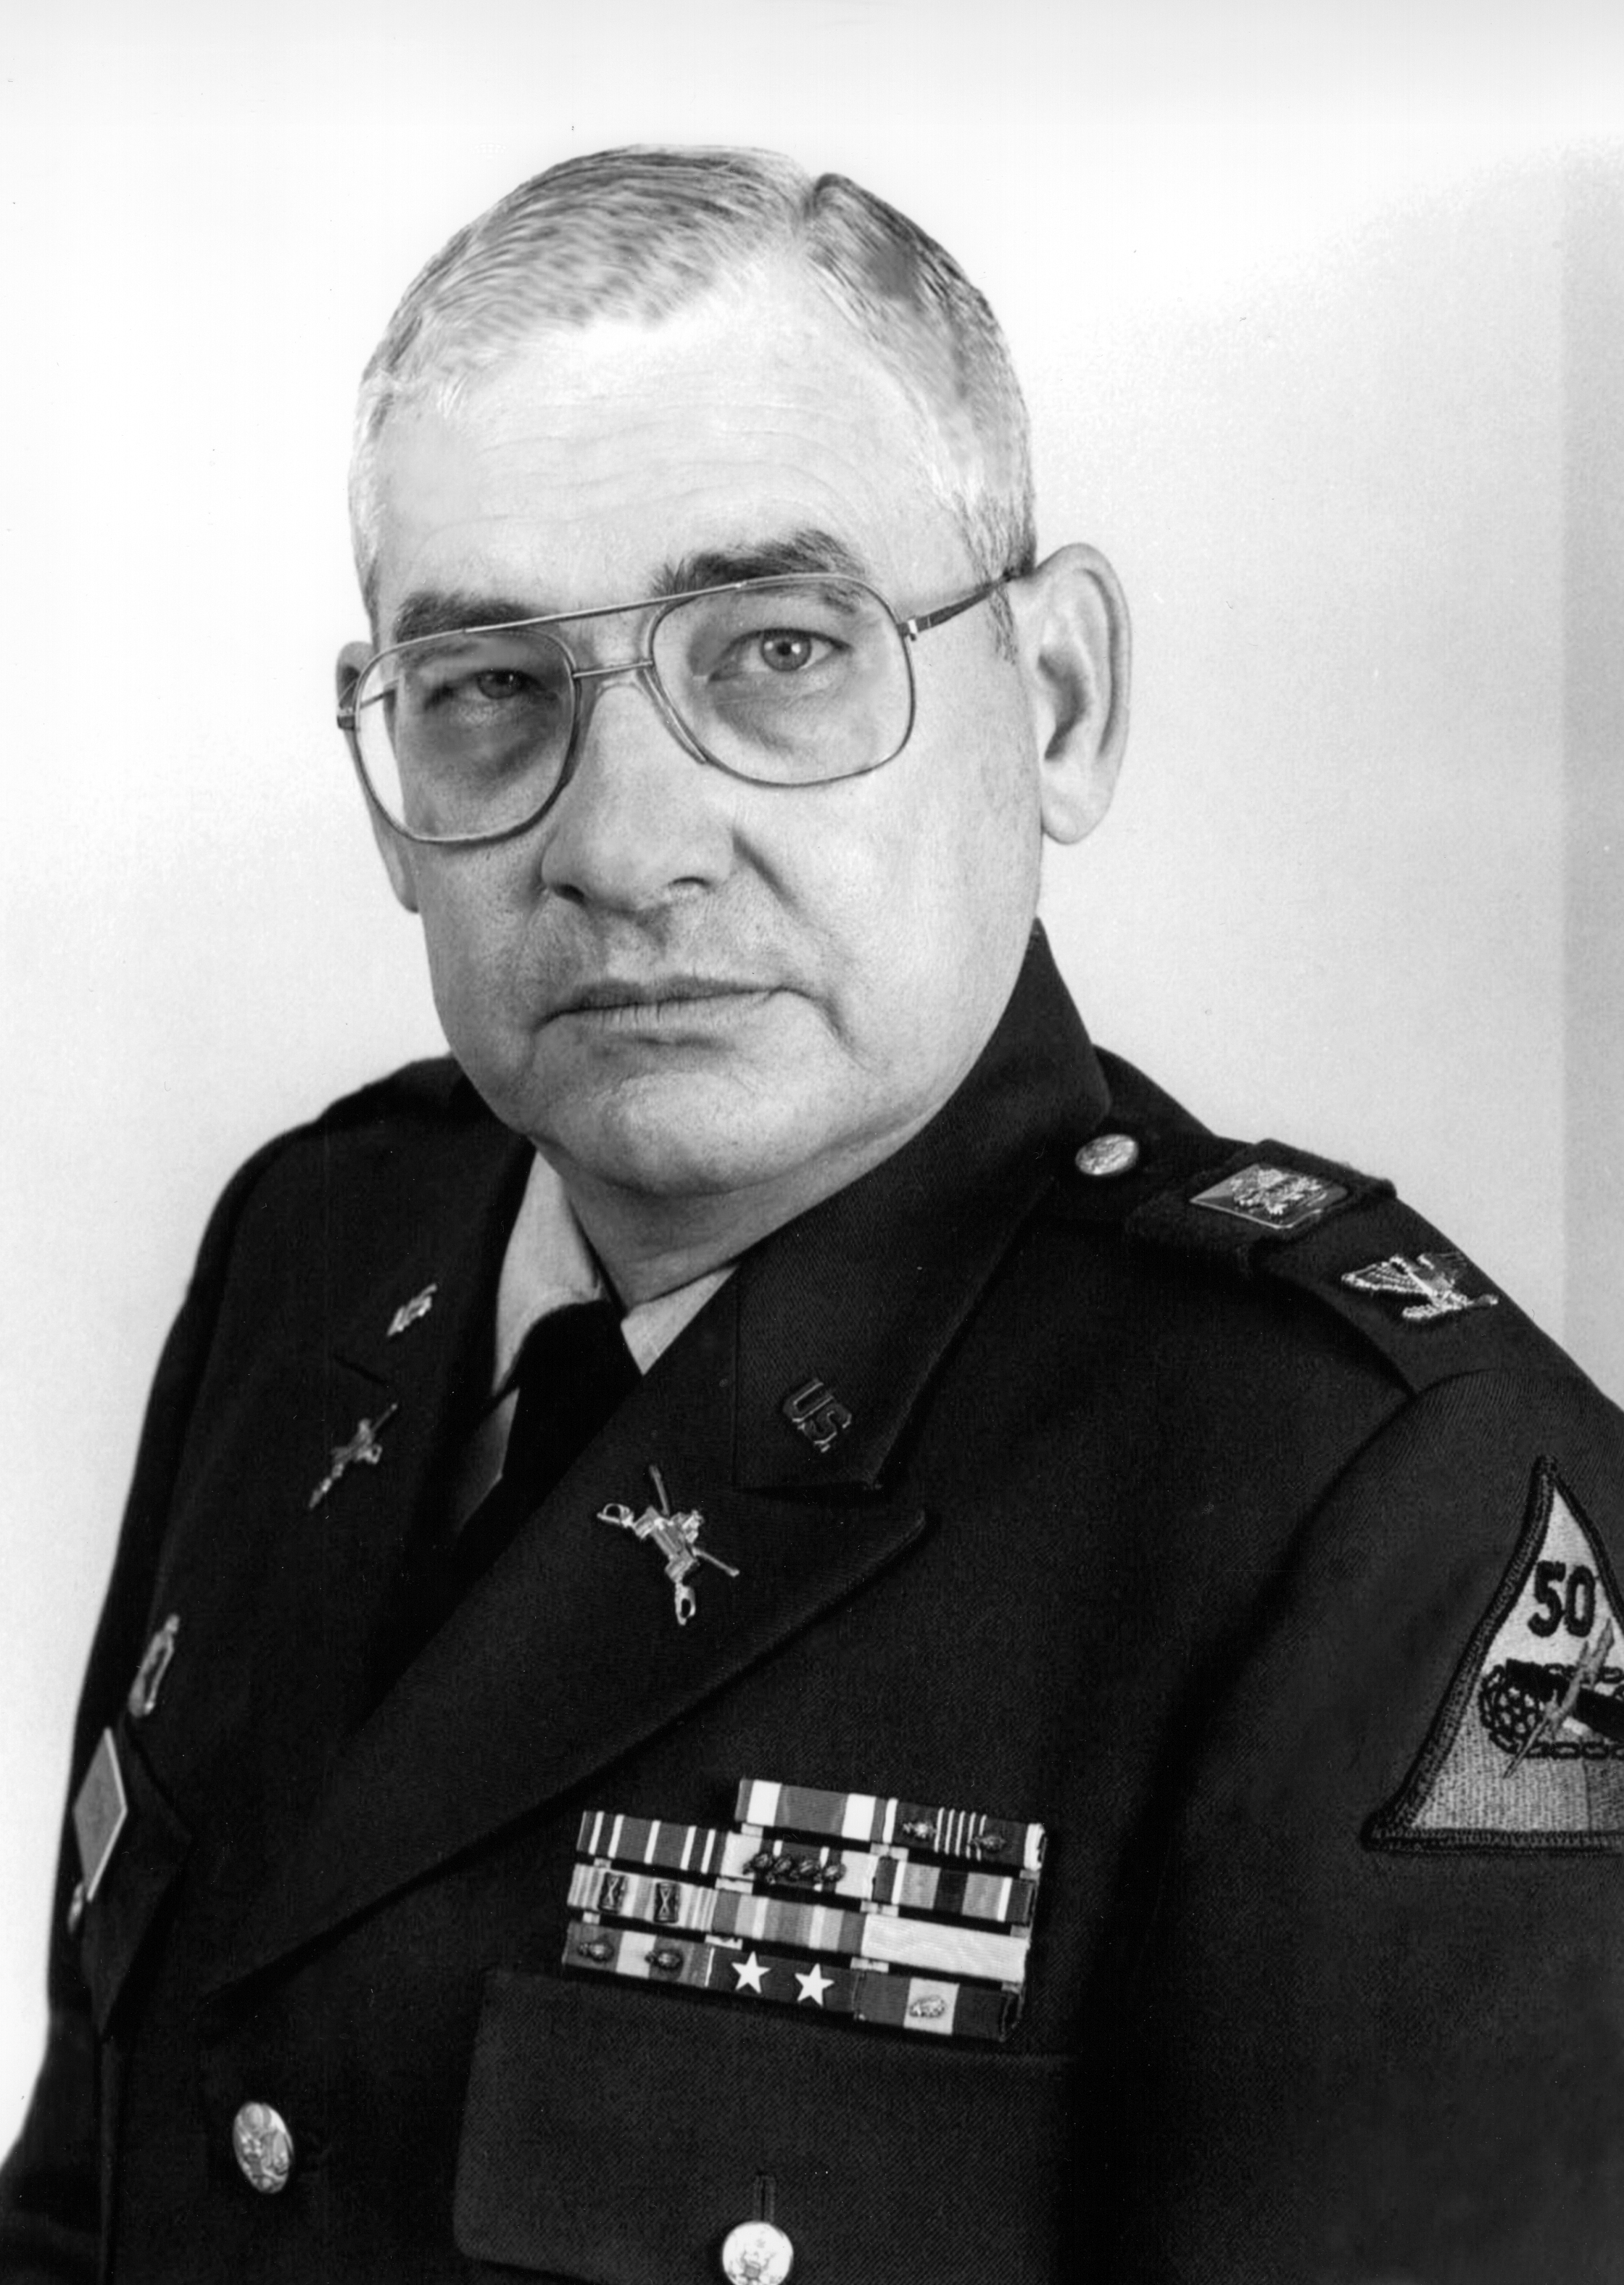 Colonel Dale M. Pyeatt